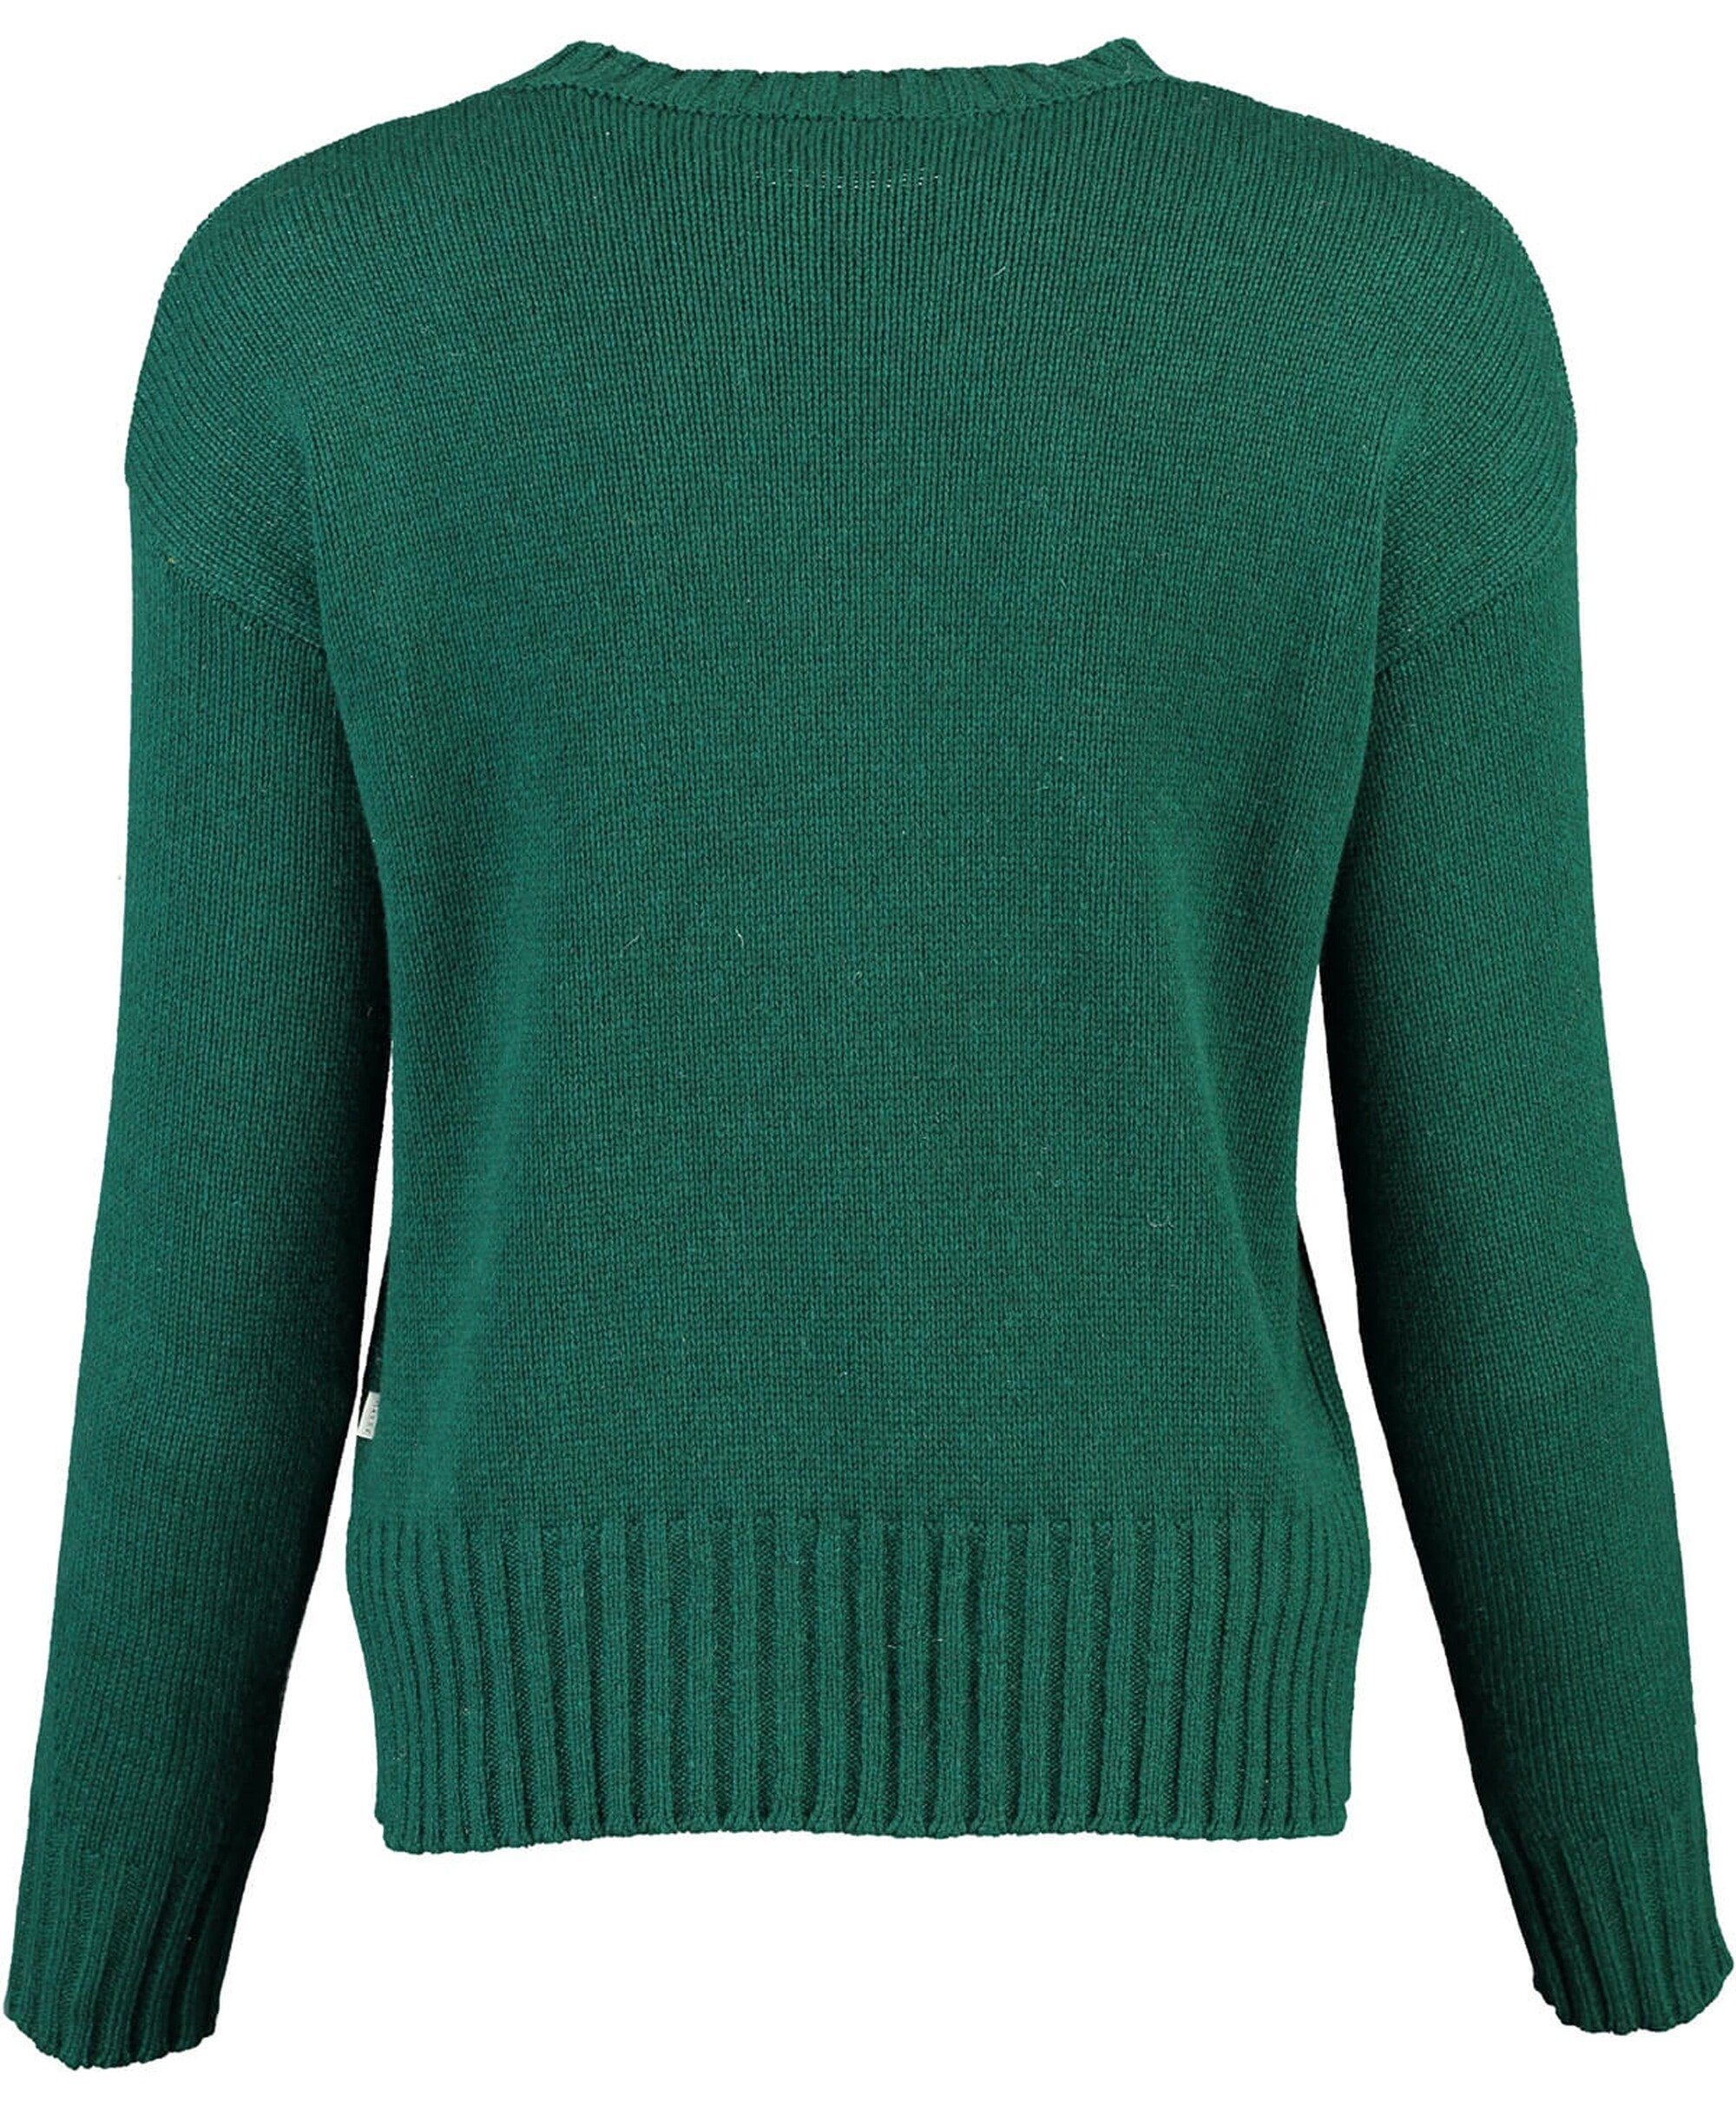 MAERZ Muenchen grün MAERZ in edler Wollmix-Qualität Pullover Strickpullover